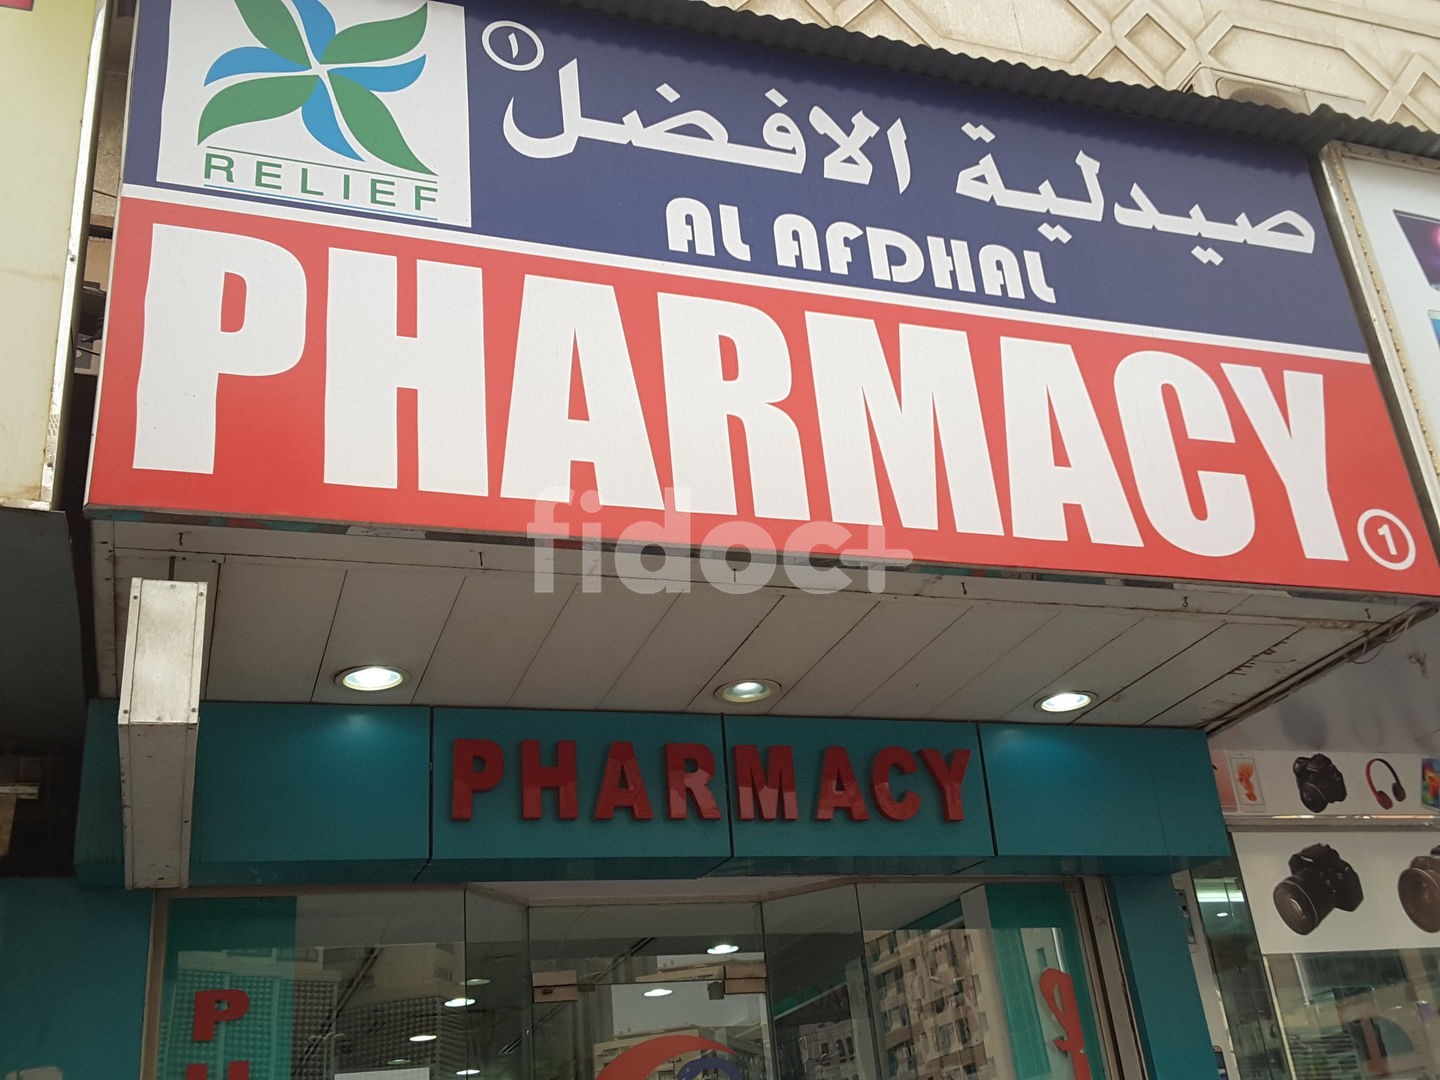 Al Afdhal Pharmacy, Dubai